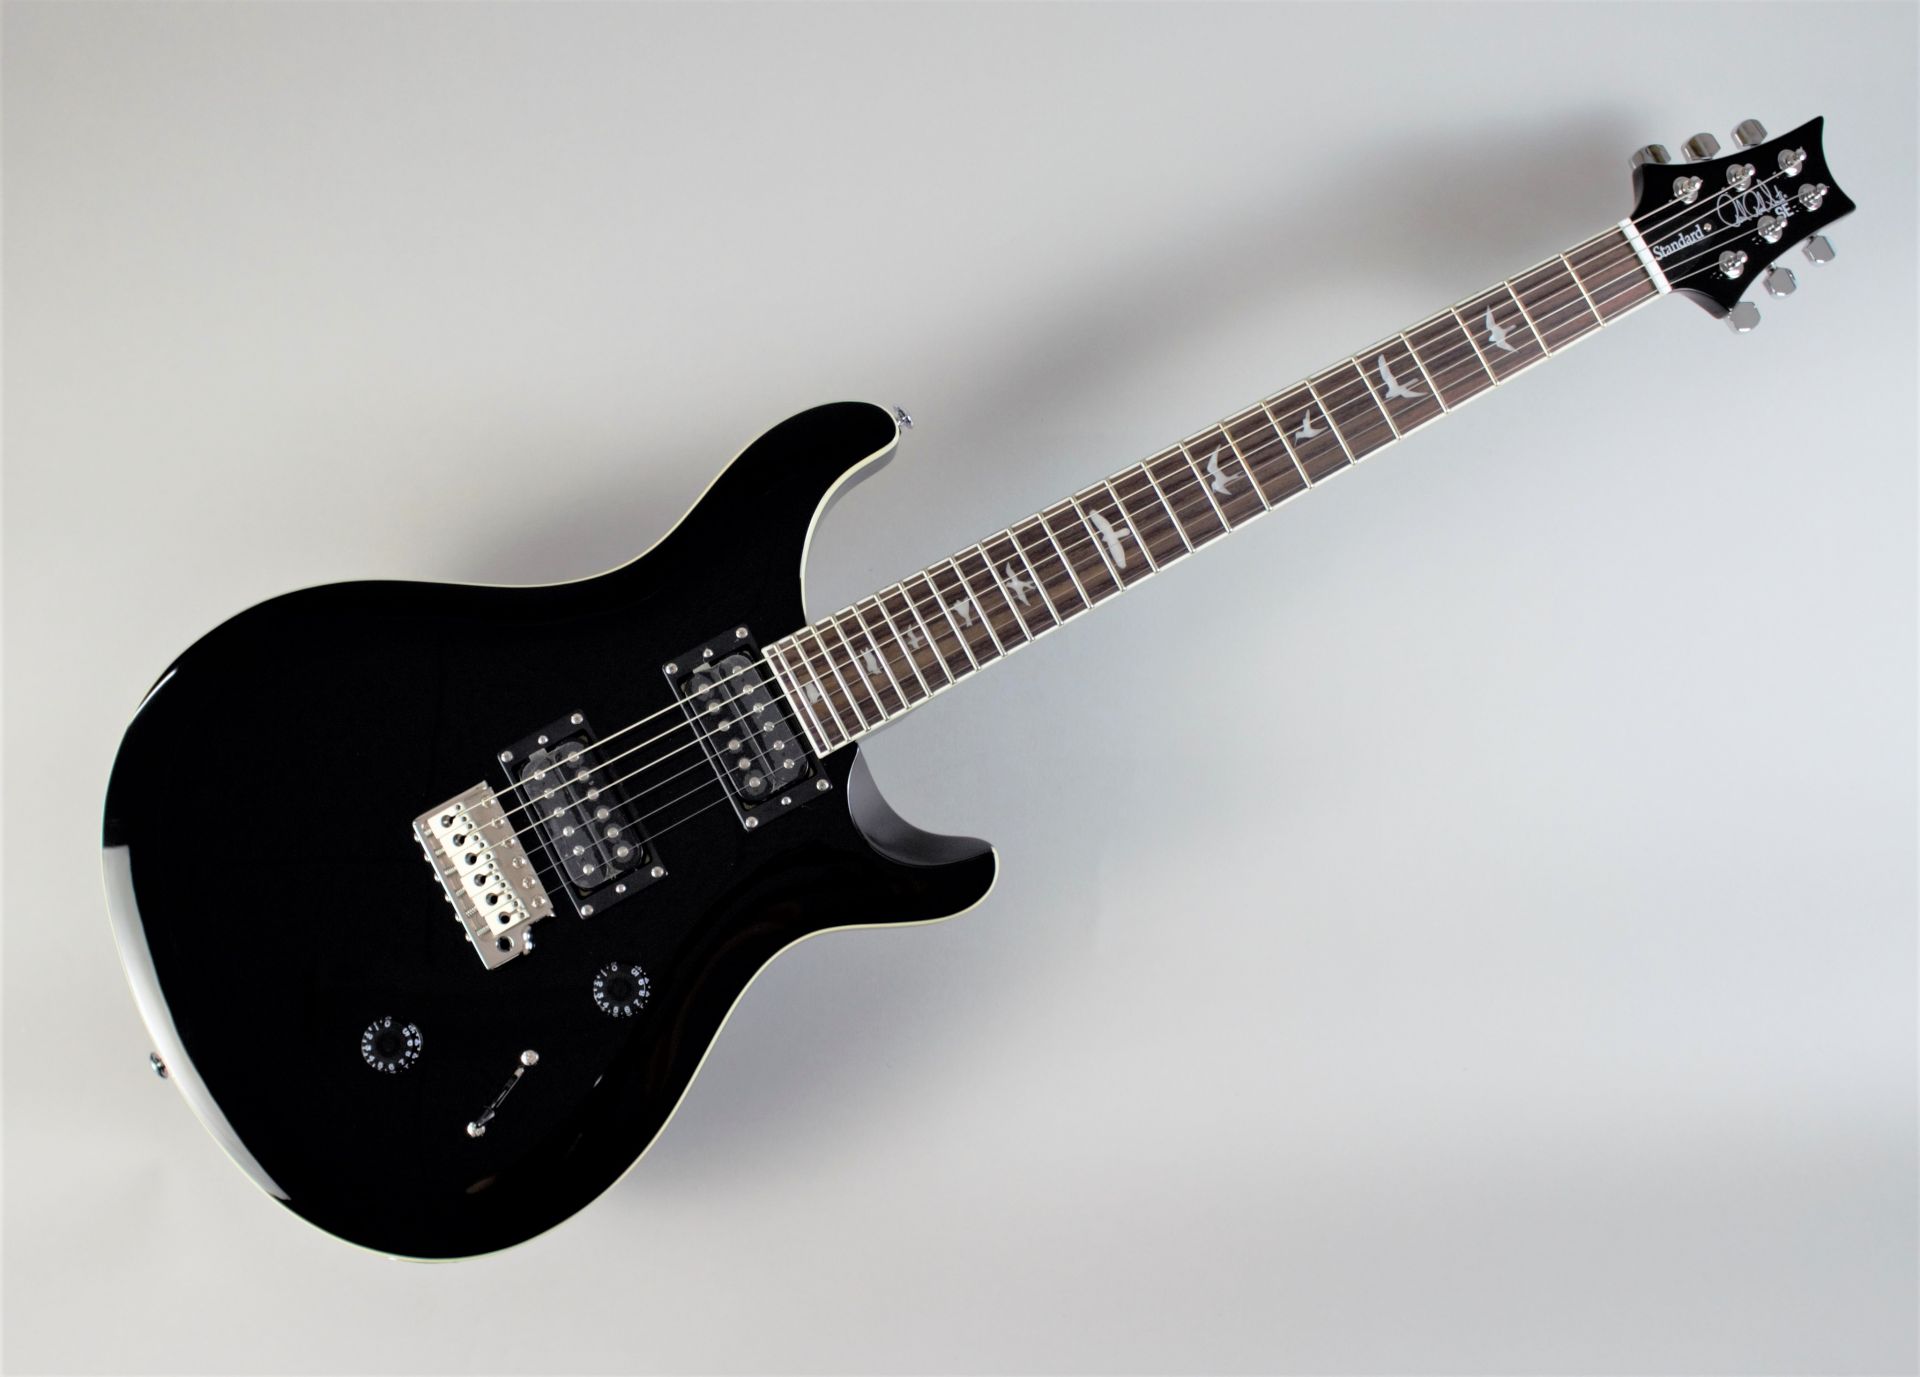 *精悍なBLACKカラーを身にまとったSE Standard 24 「初めてのギター」にも「“これぞ”の1本」にも最適なギター「PRS SE Standard 24」 今回このオリジナルカラーを採用した島村楽器オーダーモデルが発売します。 - PRS STANDARD 24シリーズをベースにしたディ […]